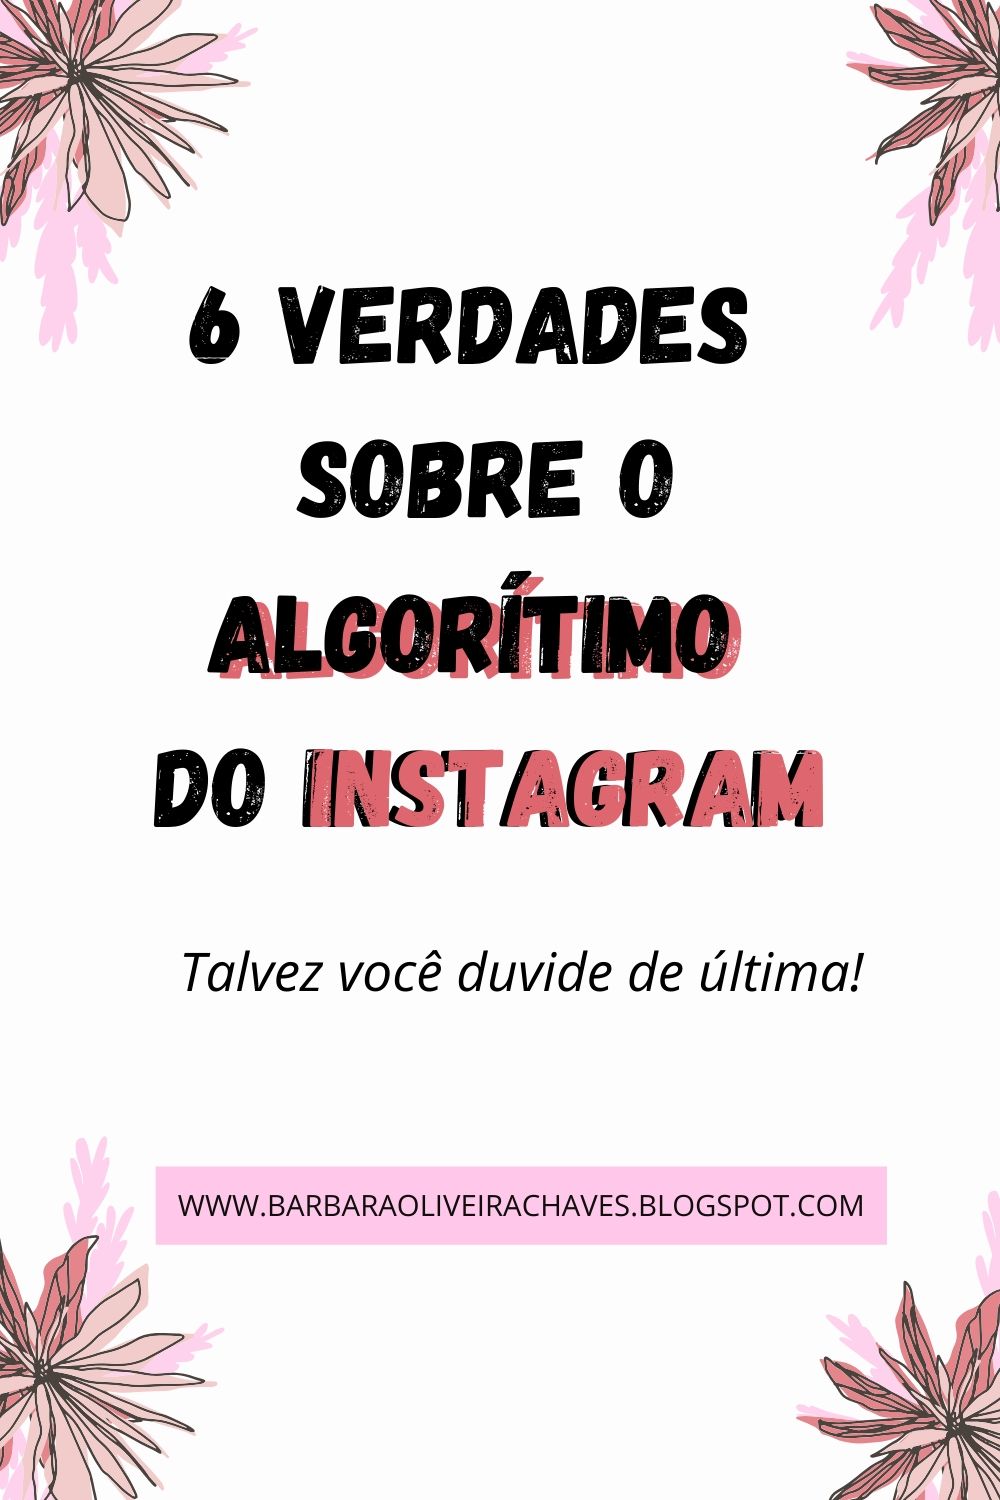 algorítimo do instagram